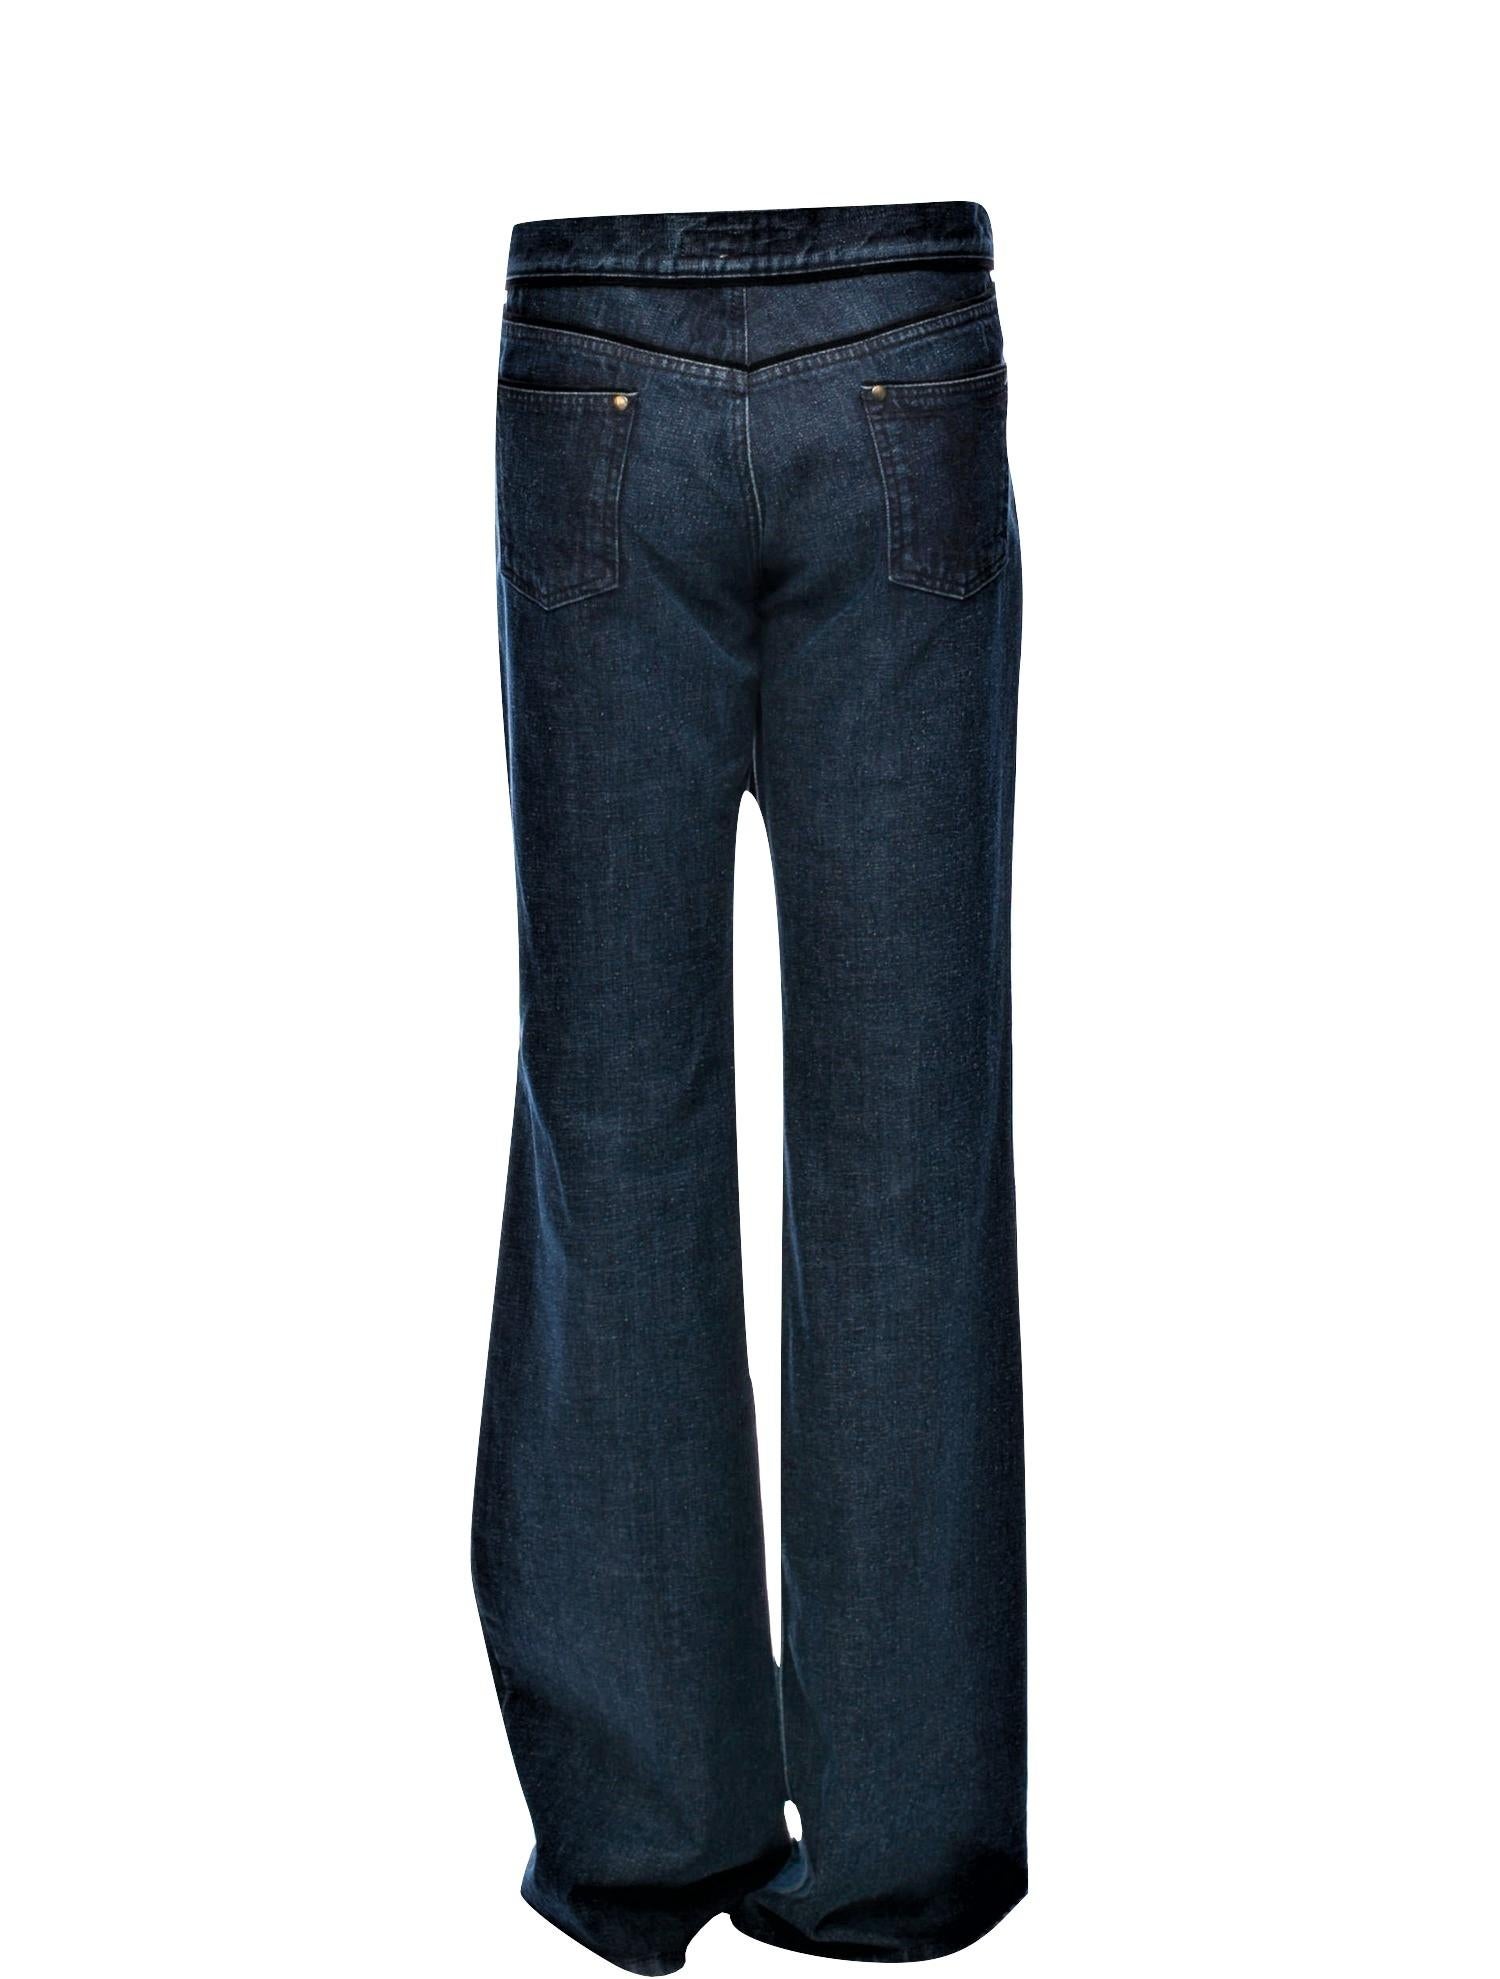 Yves Saint Laurent YSL S/S 2005 - Pantalon en jean cloche, taille 42, 795 $ 5